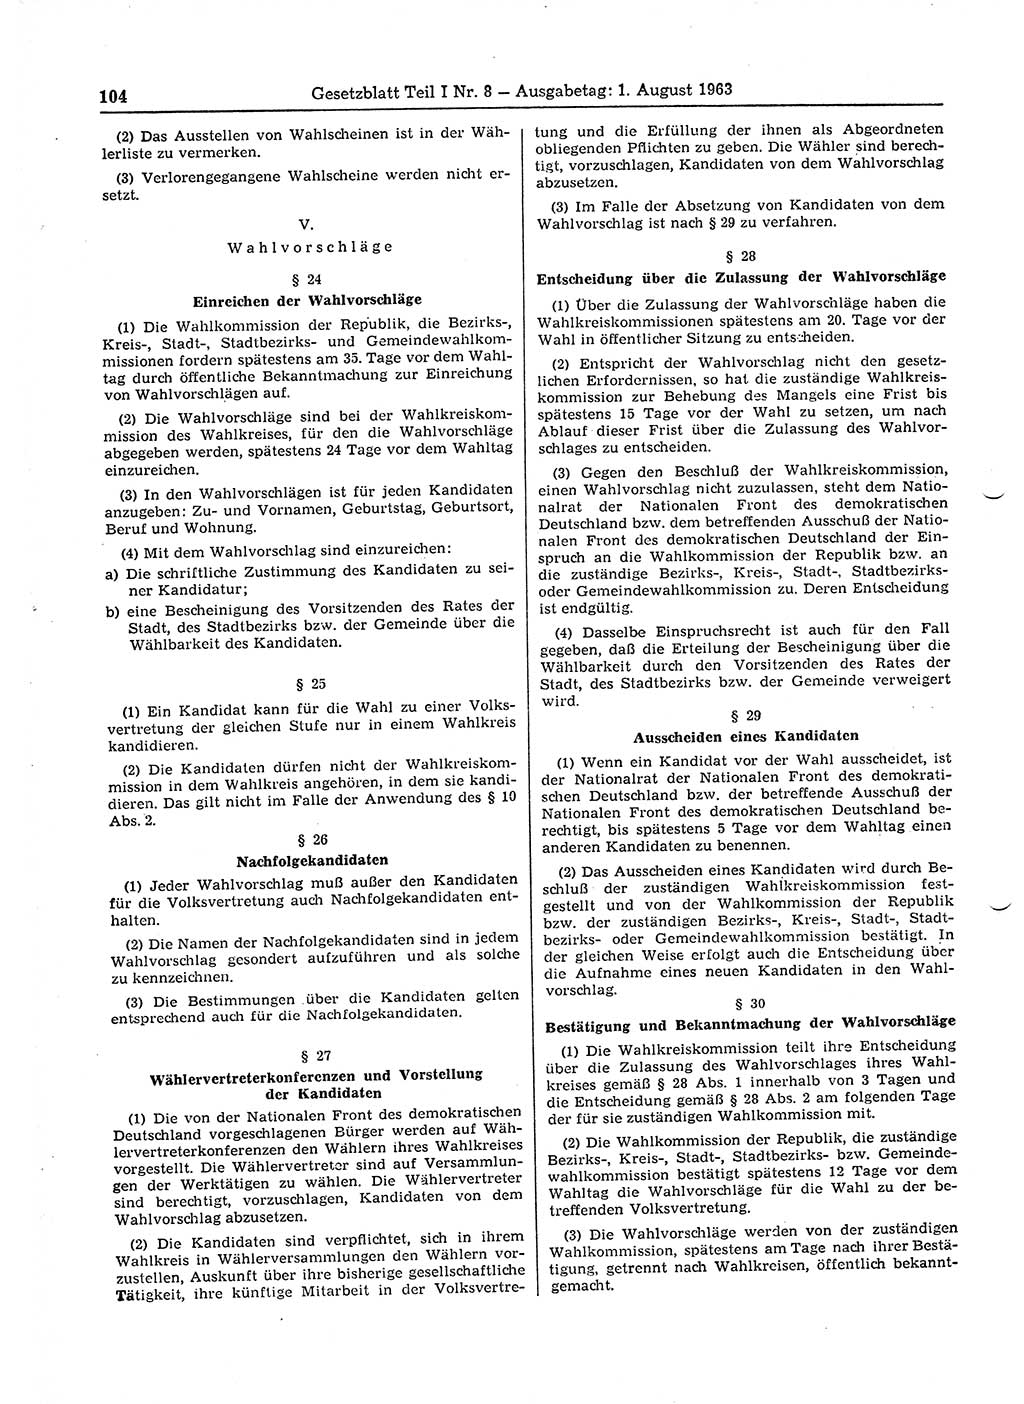 Gesetzblatt (GBl.) der Deutschen Demokratischen Republik (DDR) Teil Ⅰ 1963, Seite 104 (GBl. DDR Ⅰ 1963, S. 104)